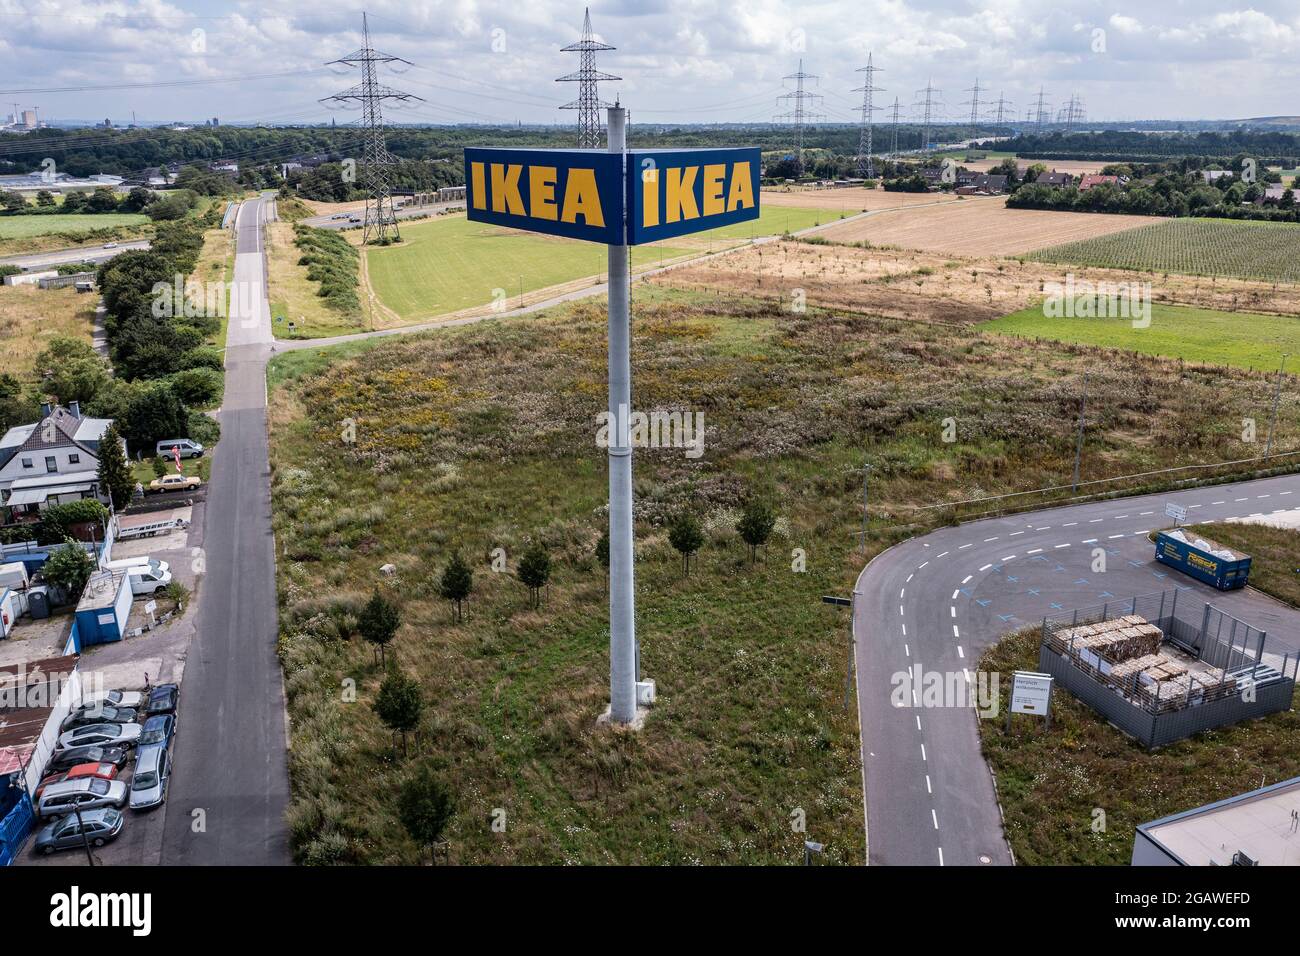 Luftaufnahme des Möbelhauses IKEA in Kaarst bei Düsseldorf. Der Bau gehört zu den größten Ikea-Einrichtungshäusern in Germania. Foto Stock